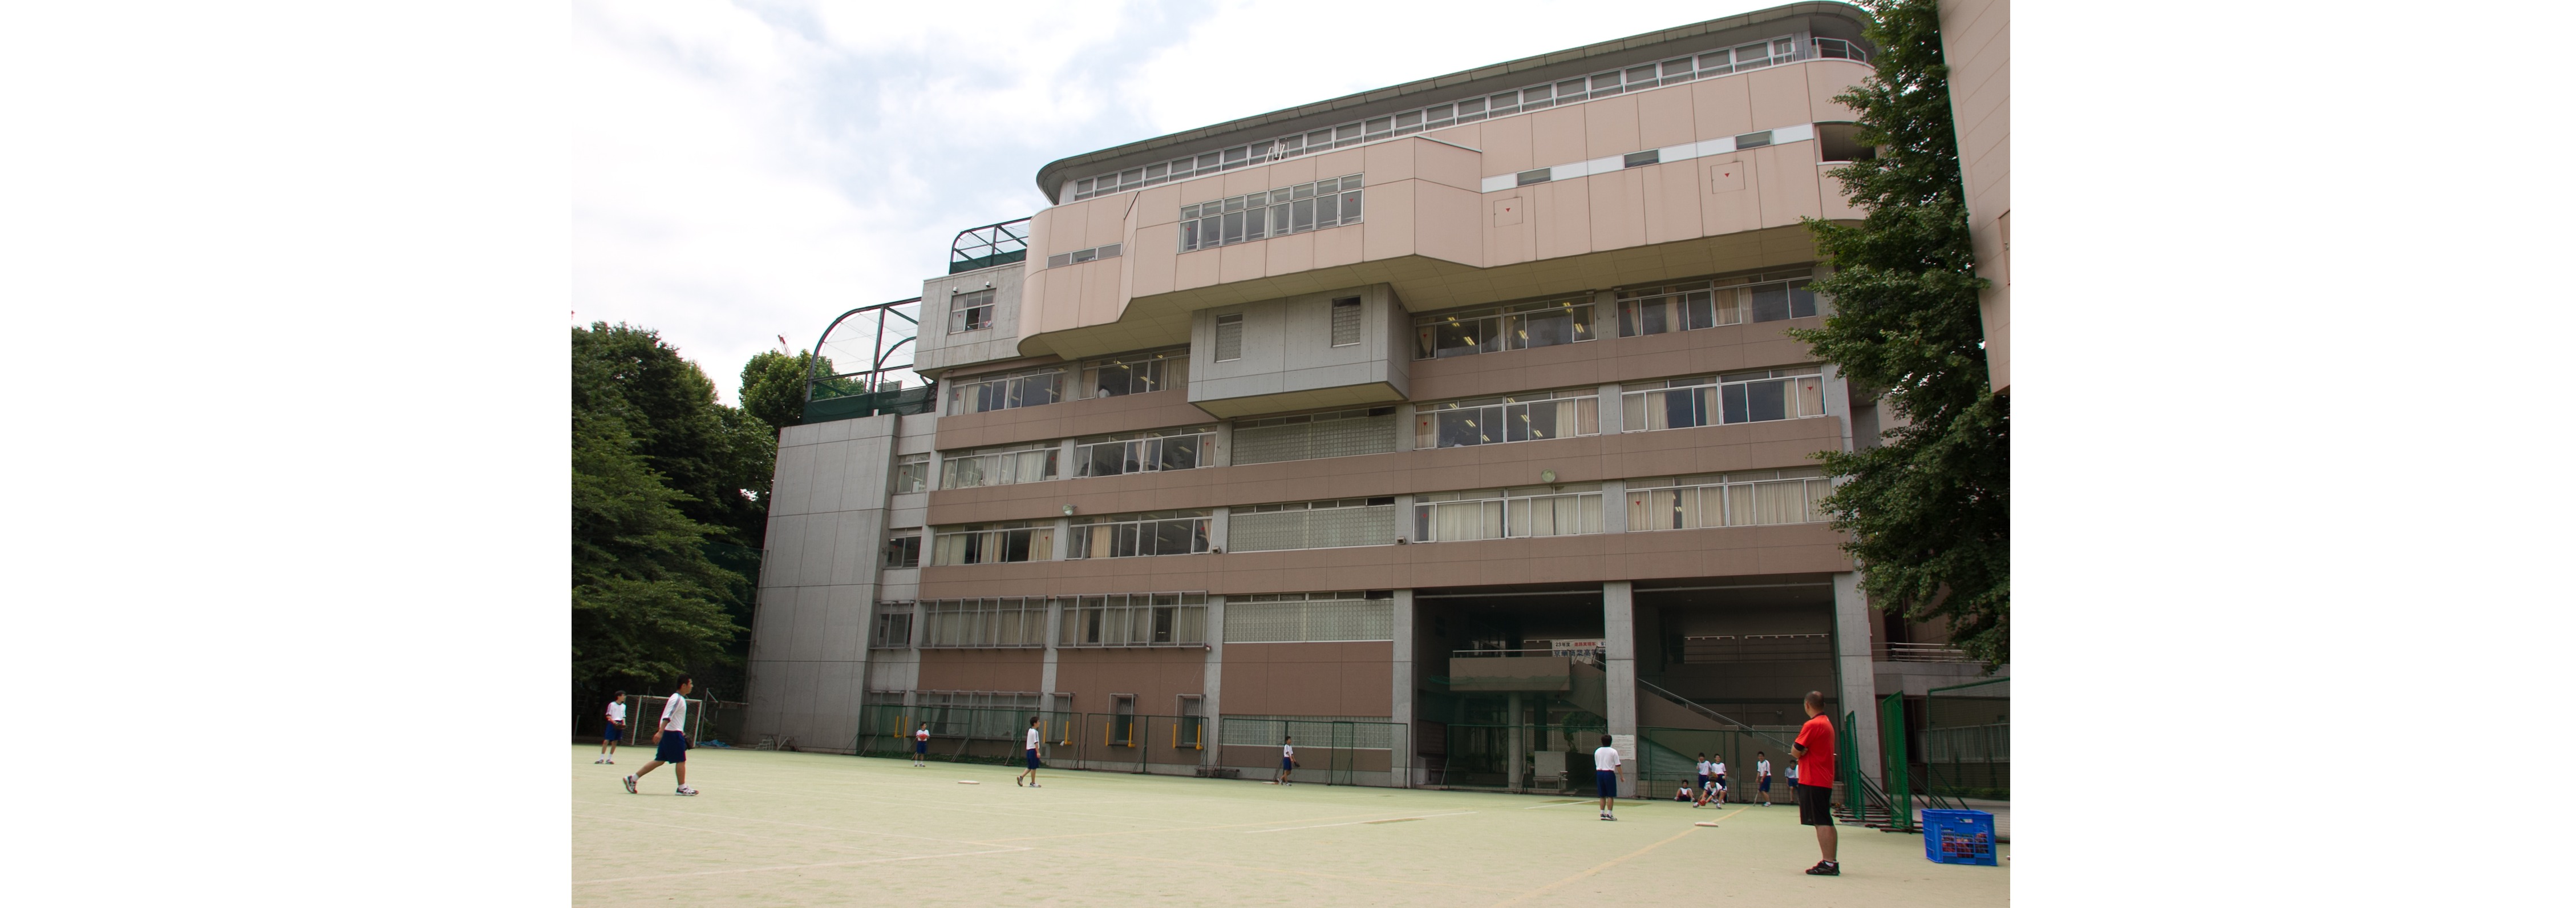 京華中学校